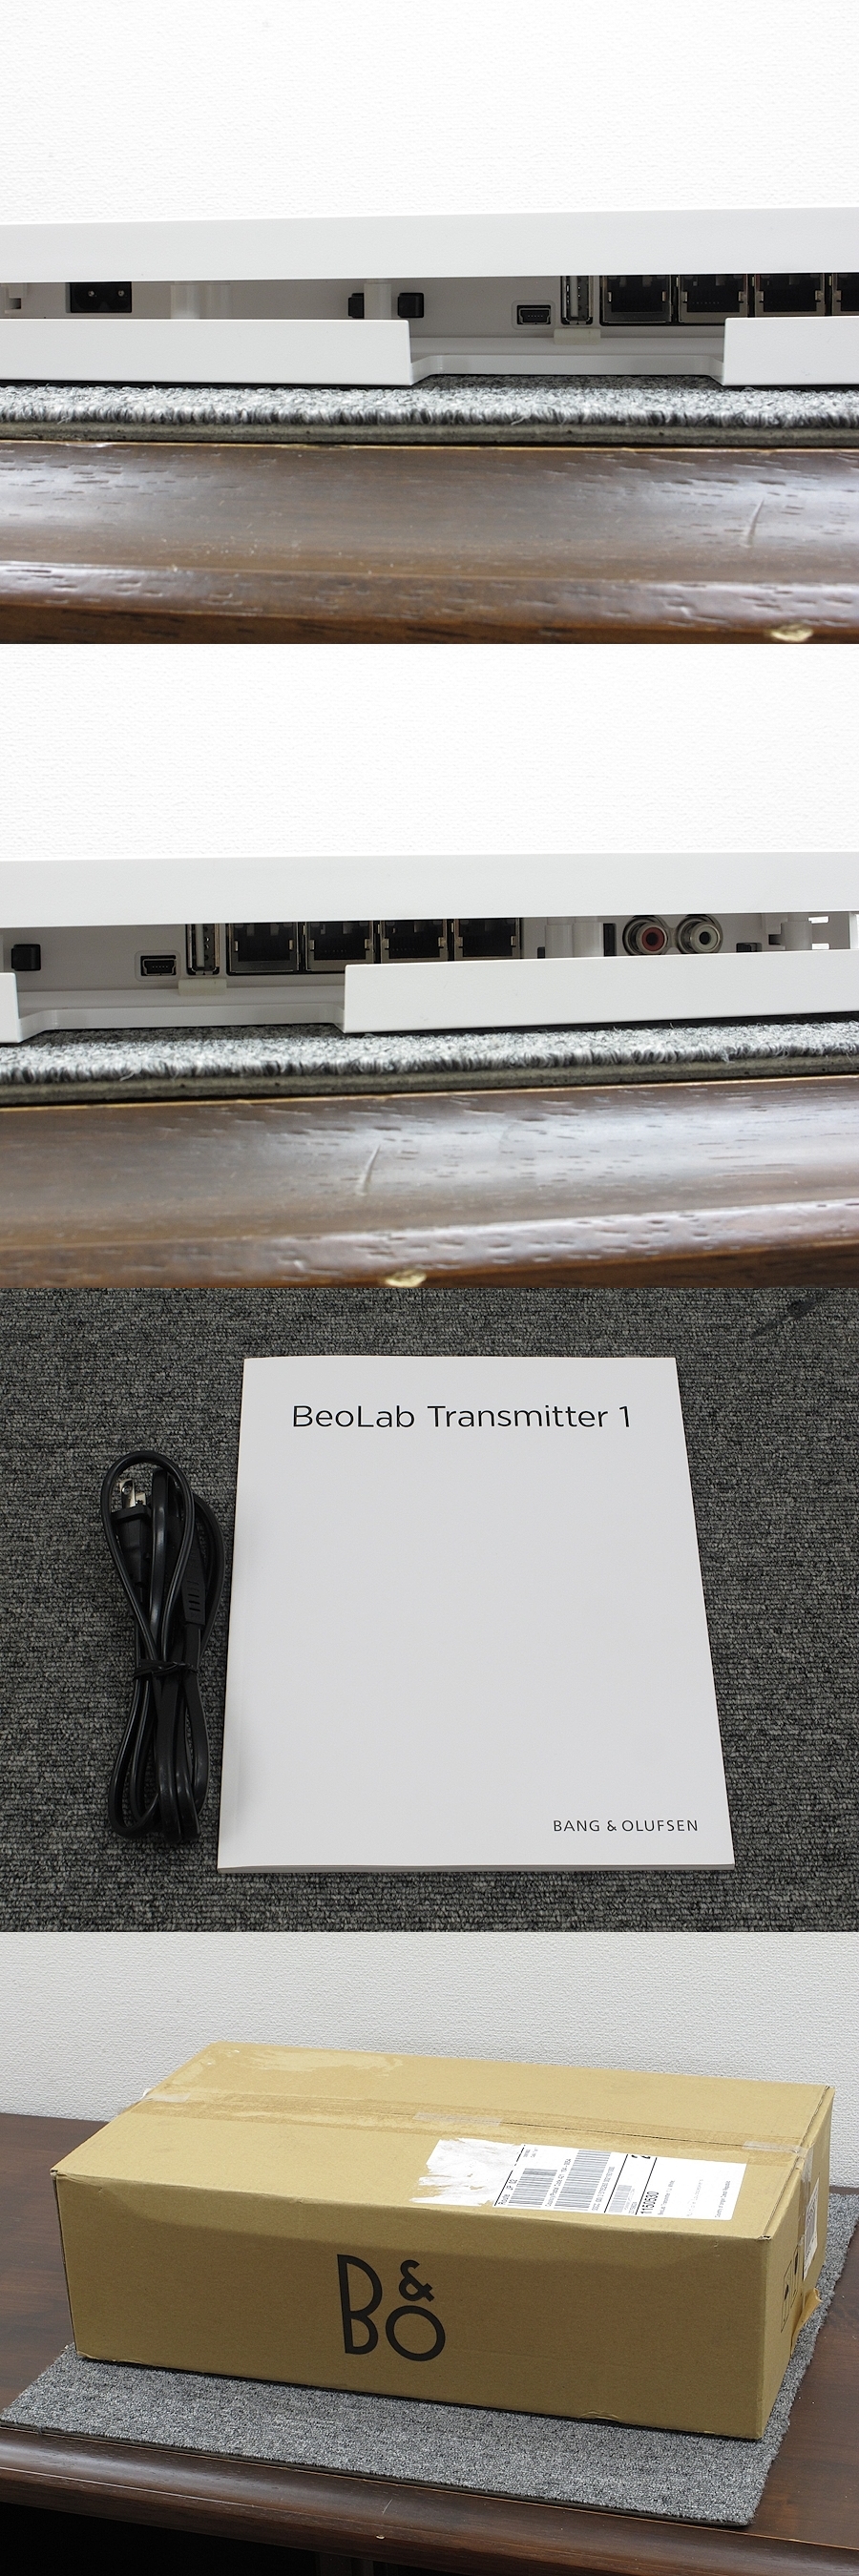 開封未使用】B&O BeoLab Transmitter 1 @24617 / 中古オーディオ買取